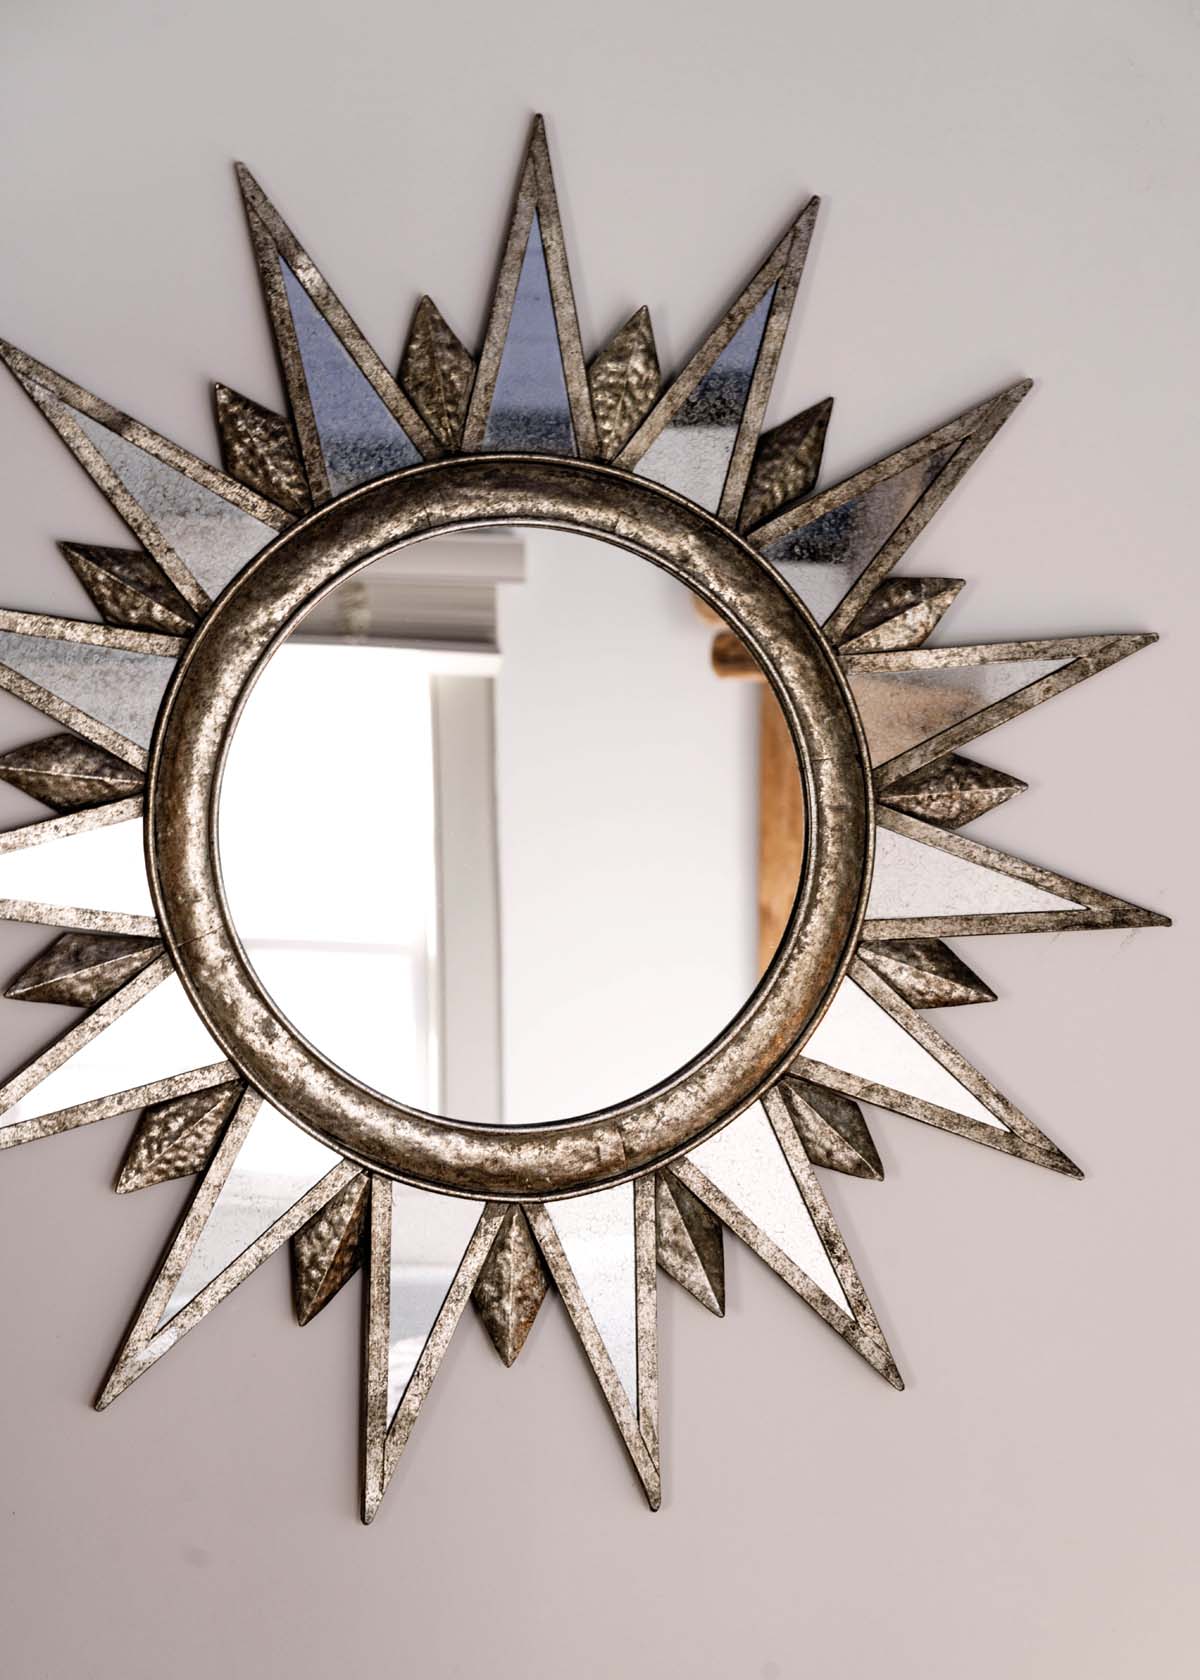 Decorative silver mirror